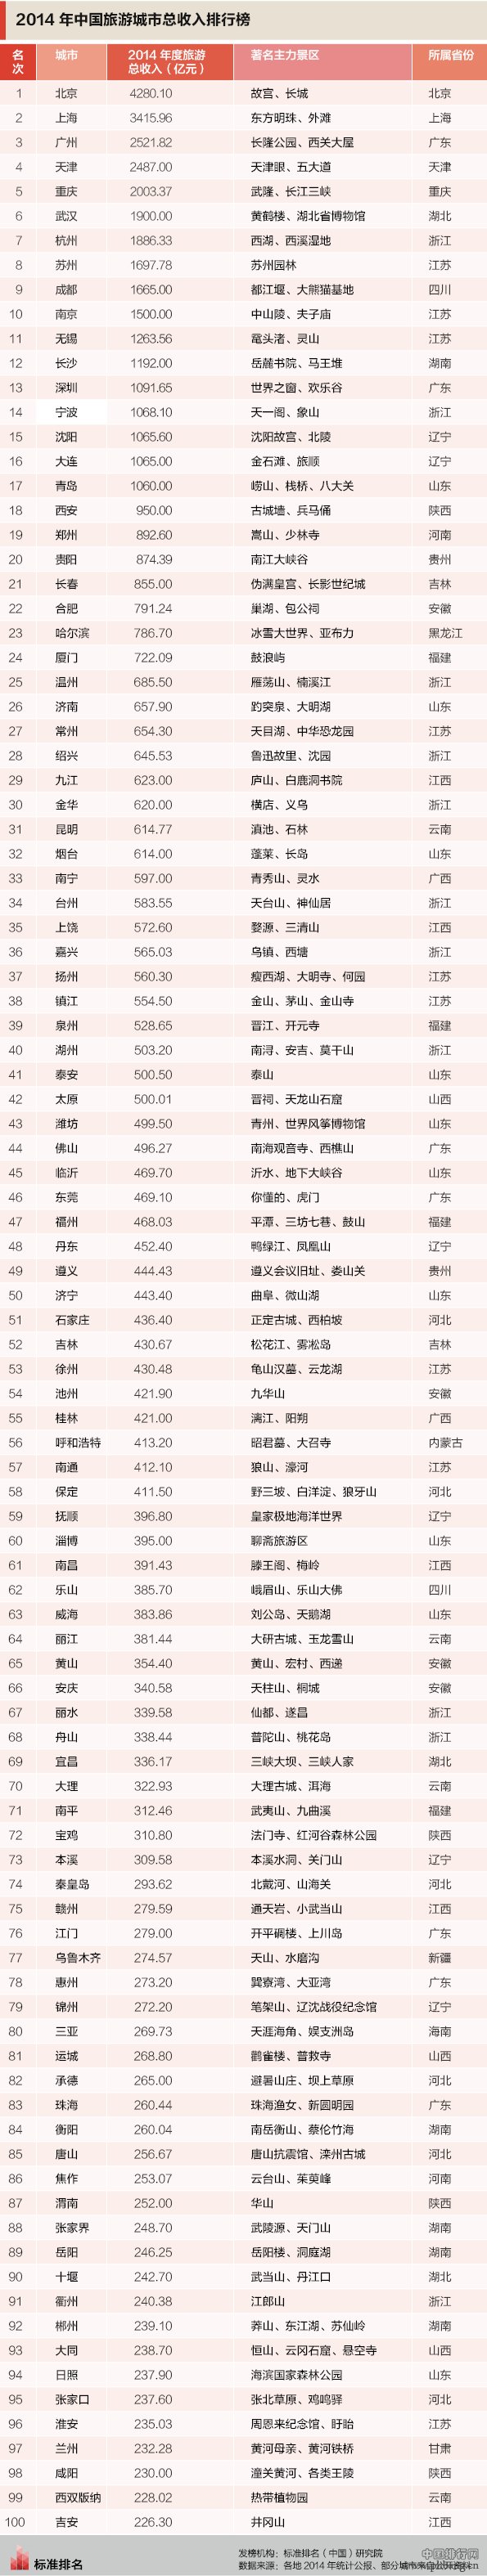 2014年中國旅遊城市收入榜